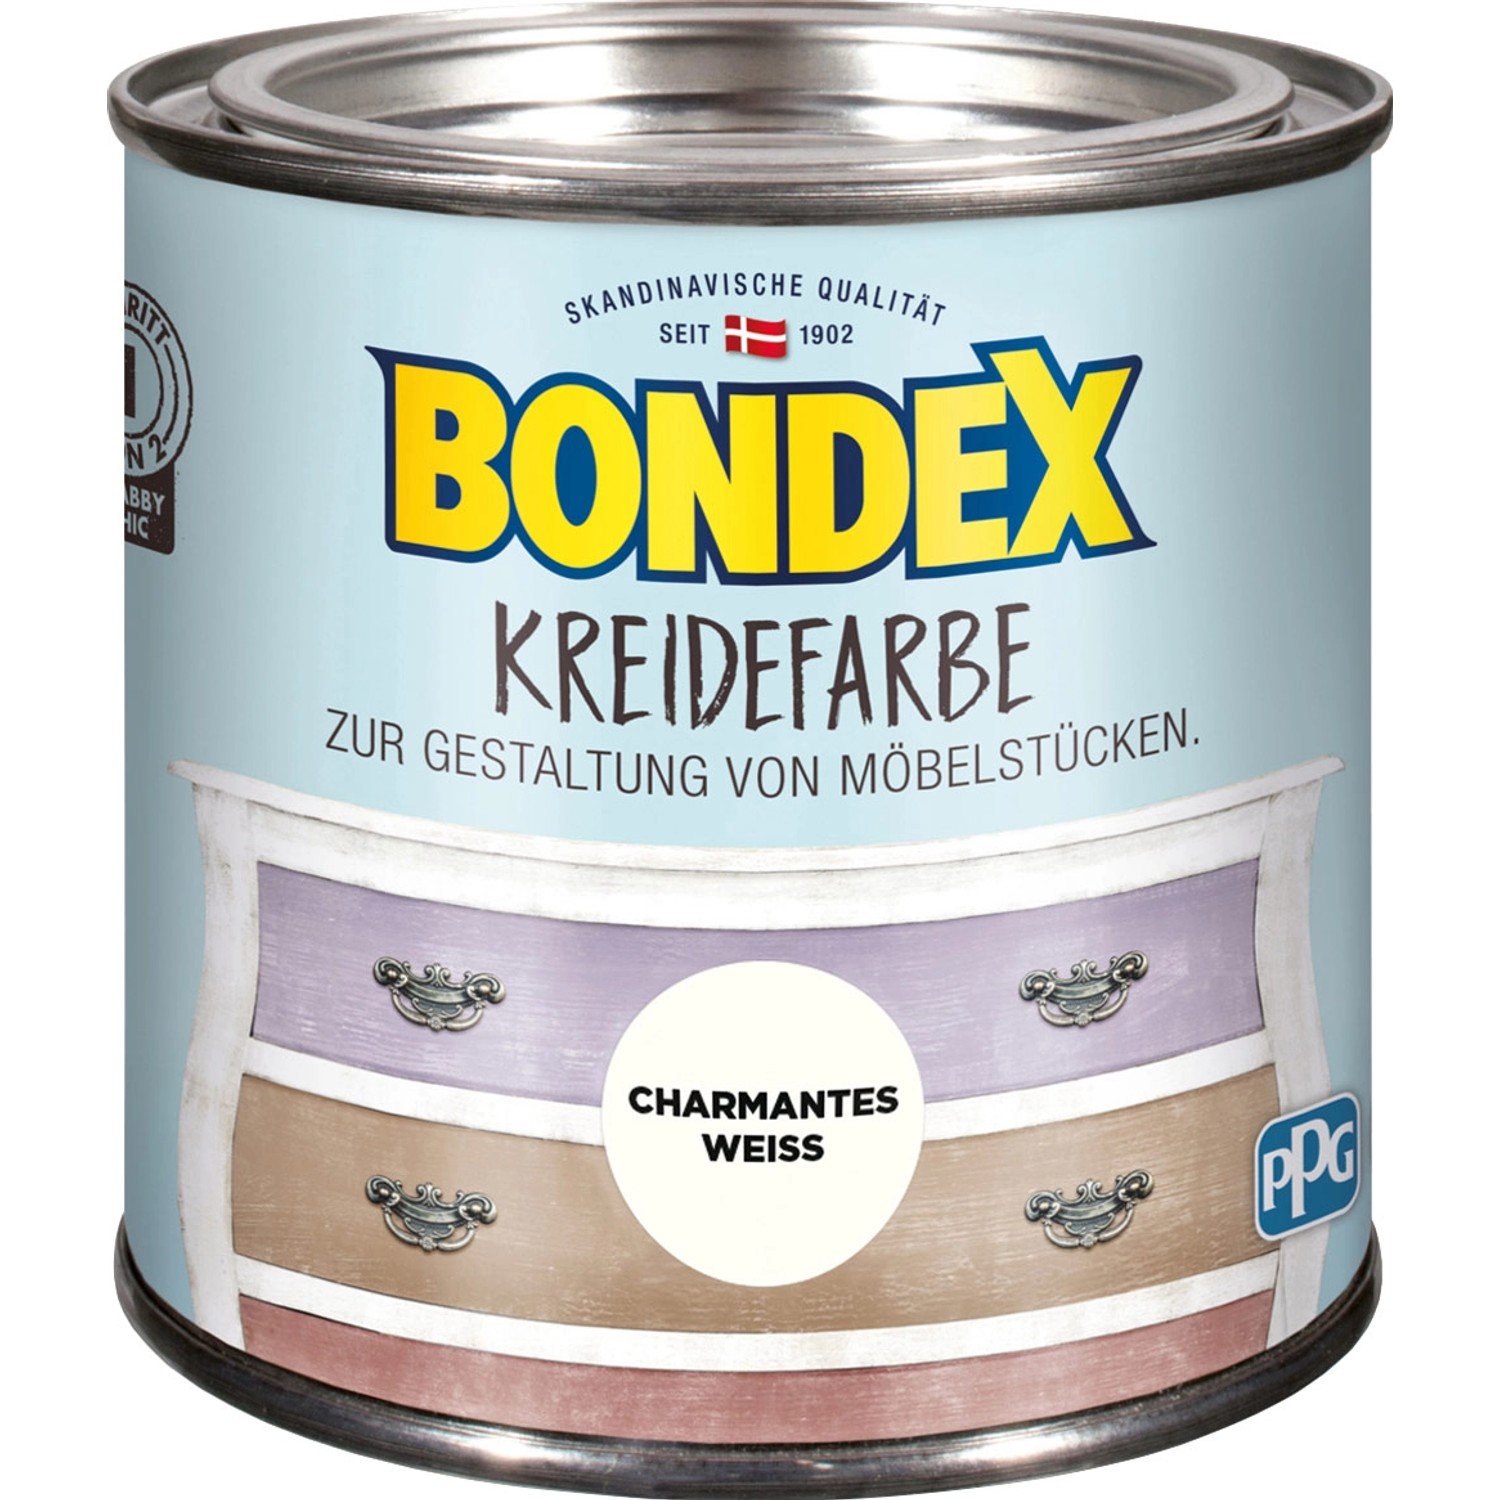 Bondex Kreidefarbe Charmantes Weiß 500 ml